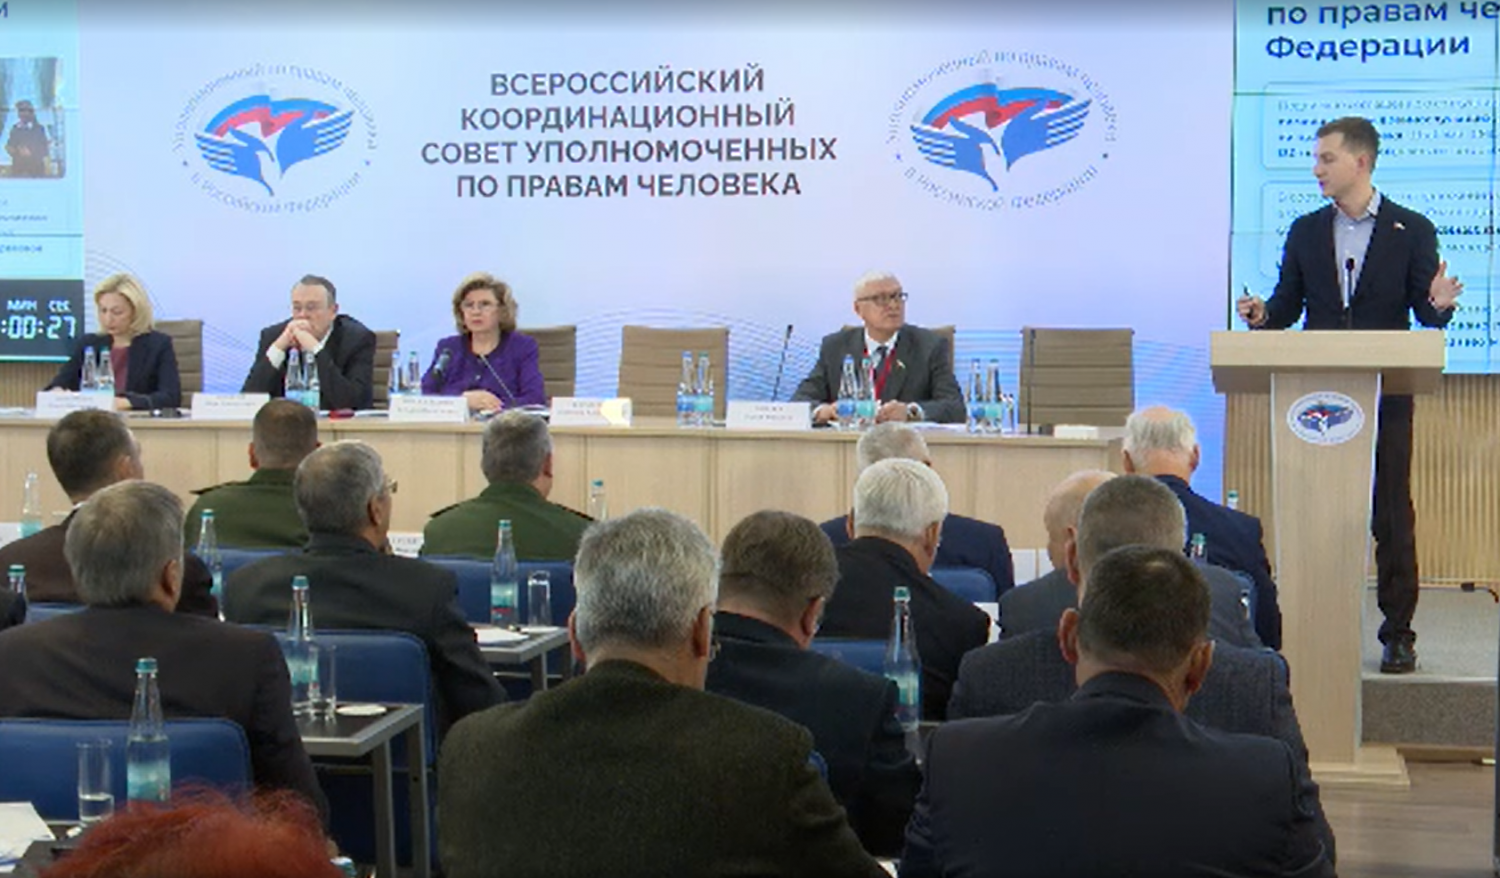 Елена Рогова принимает участие во Всероссийском координационном совете уполномоченных